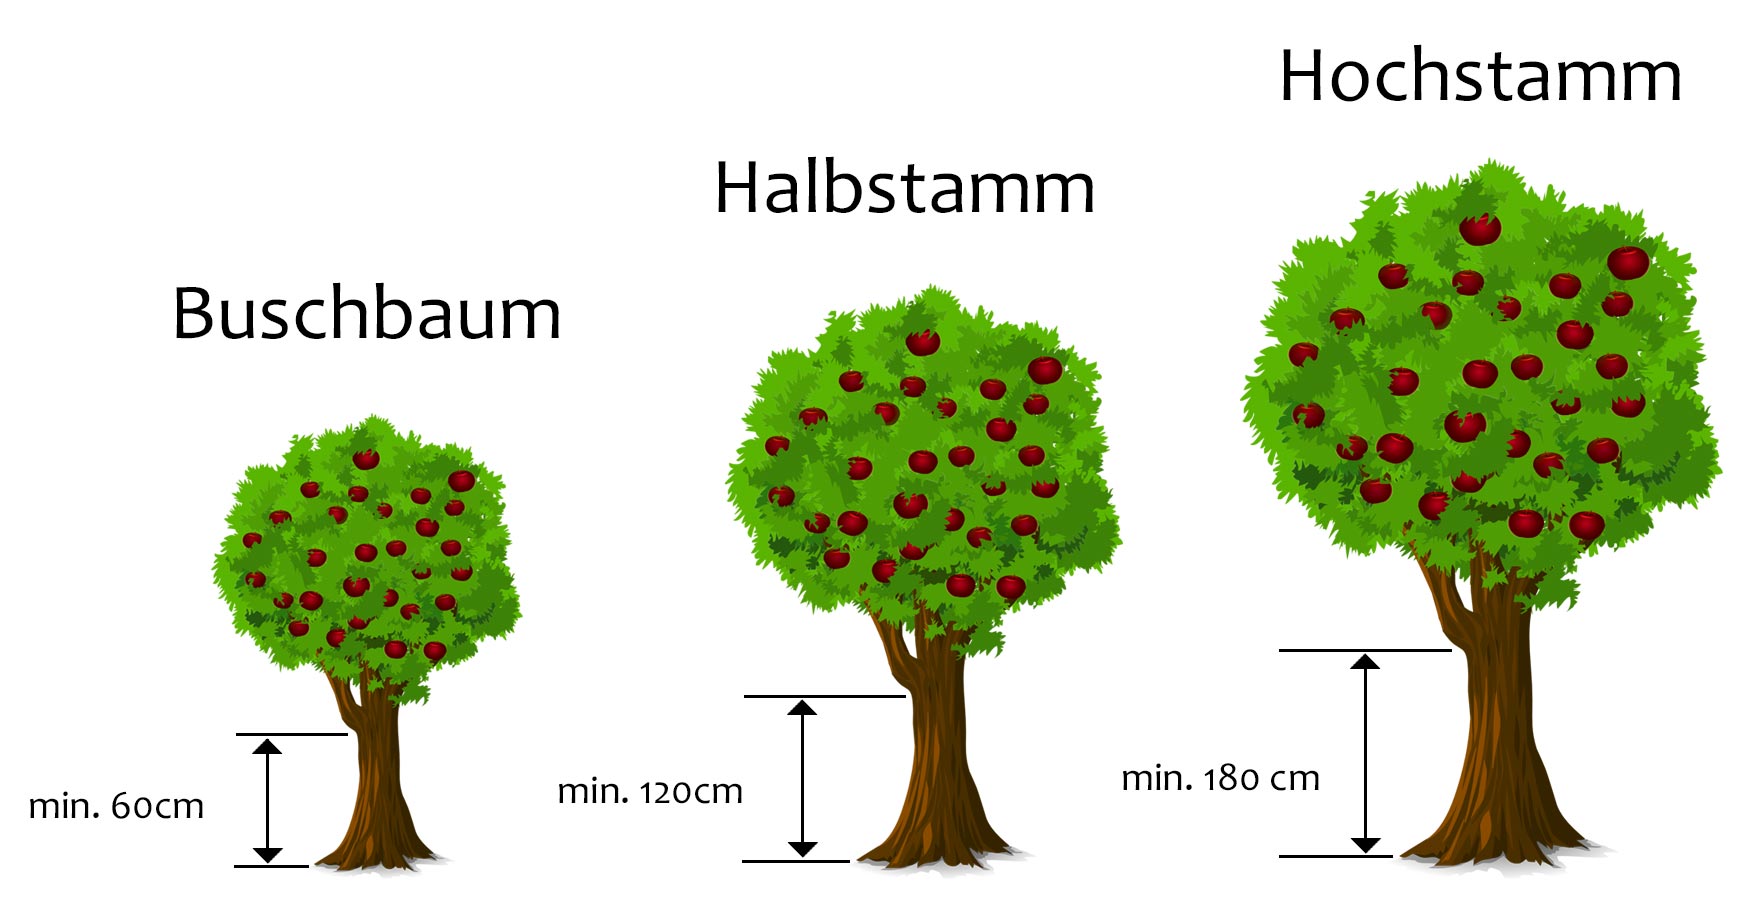 Grafik Hochstamm Halbstamm Buschbaum